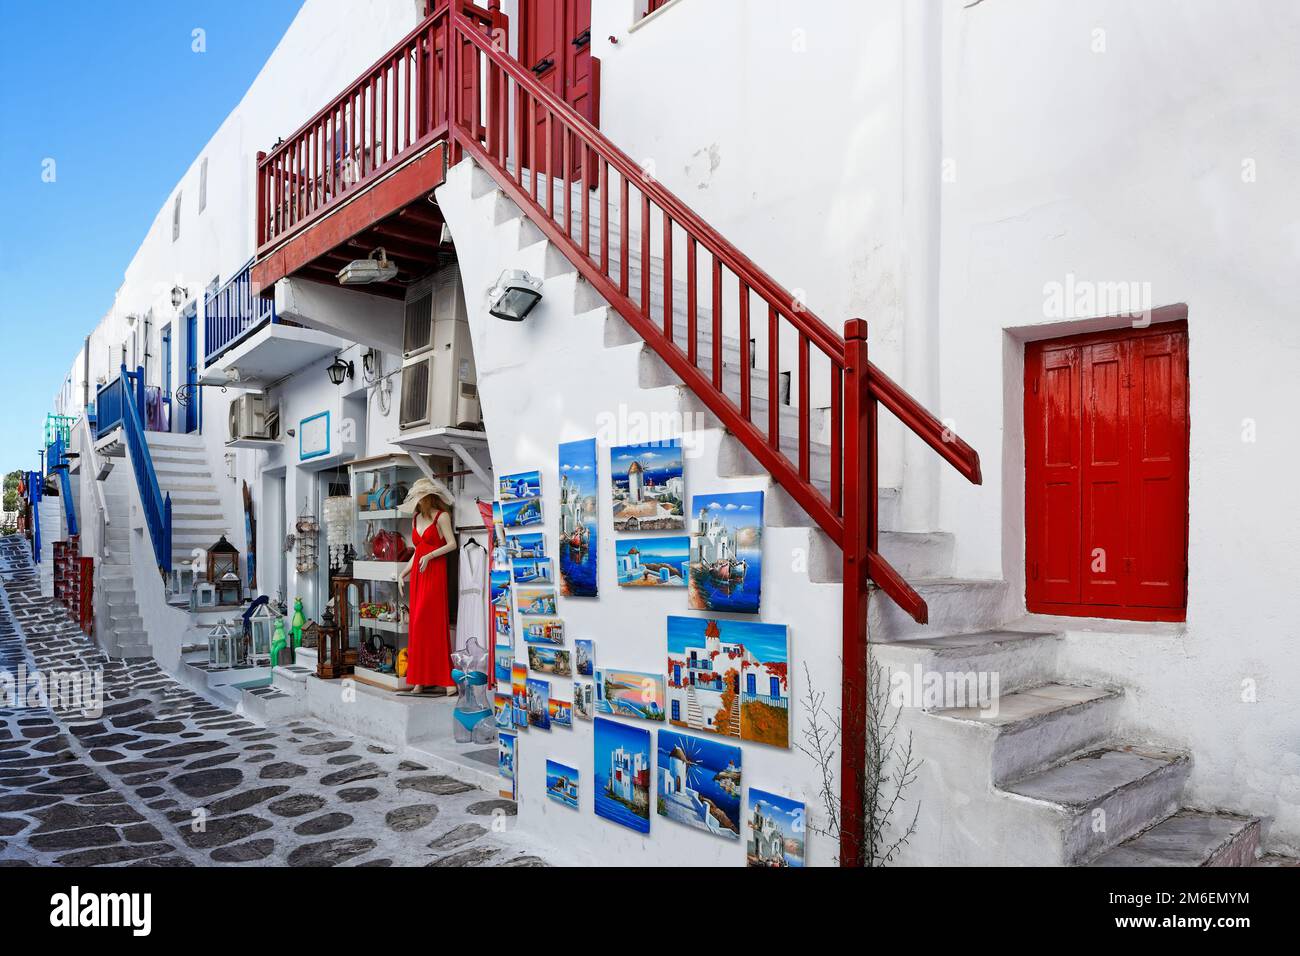 Les ruelles pittoresques à l'intérieur de Chora de Mykonos, Grèce Banque D'Images